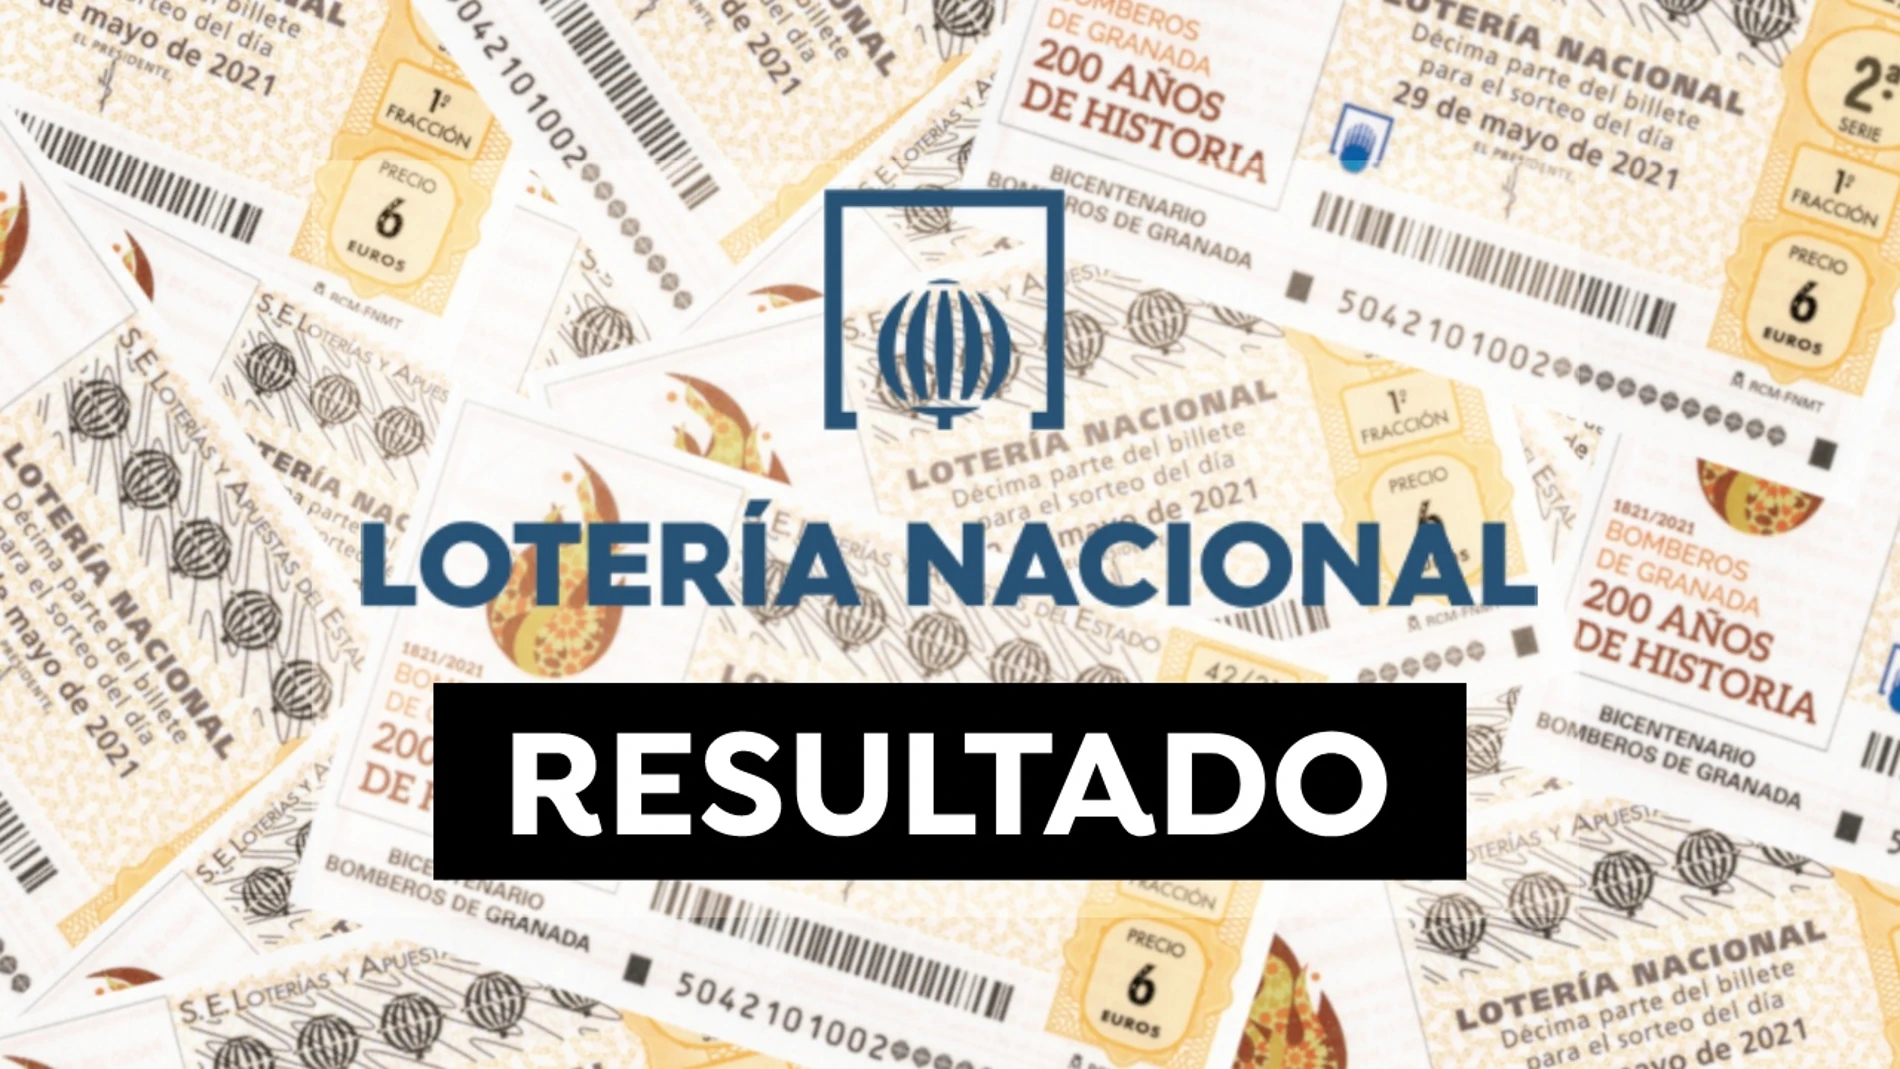 Lotería Nacional: Comprobar resultado y sorteo de hoy sábado 29 de mayo, en directo